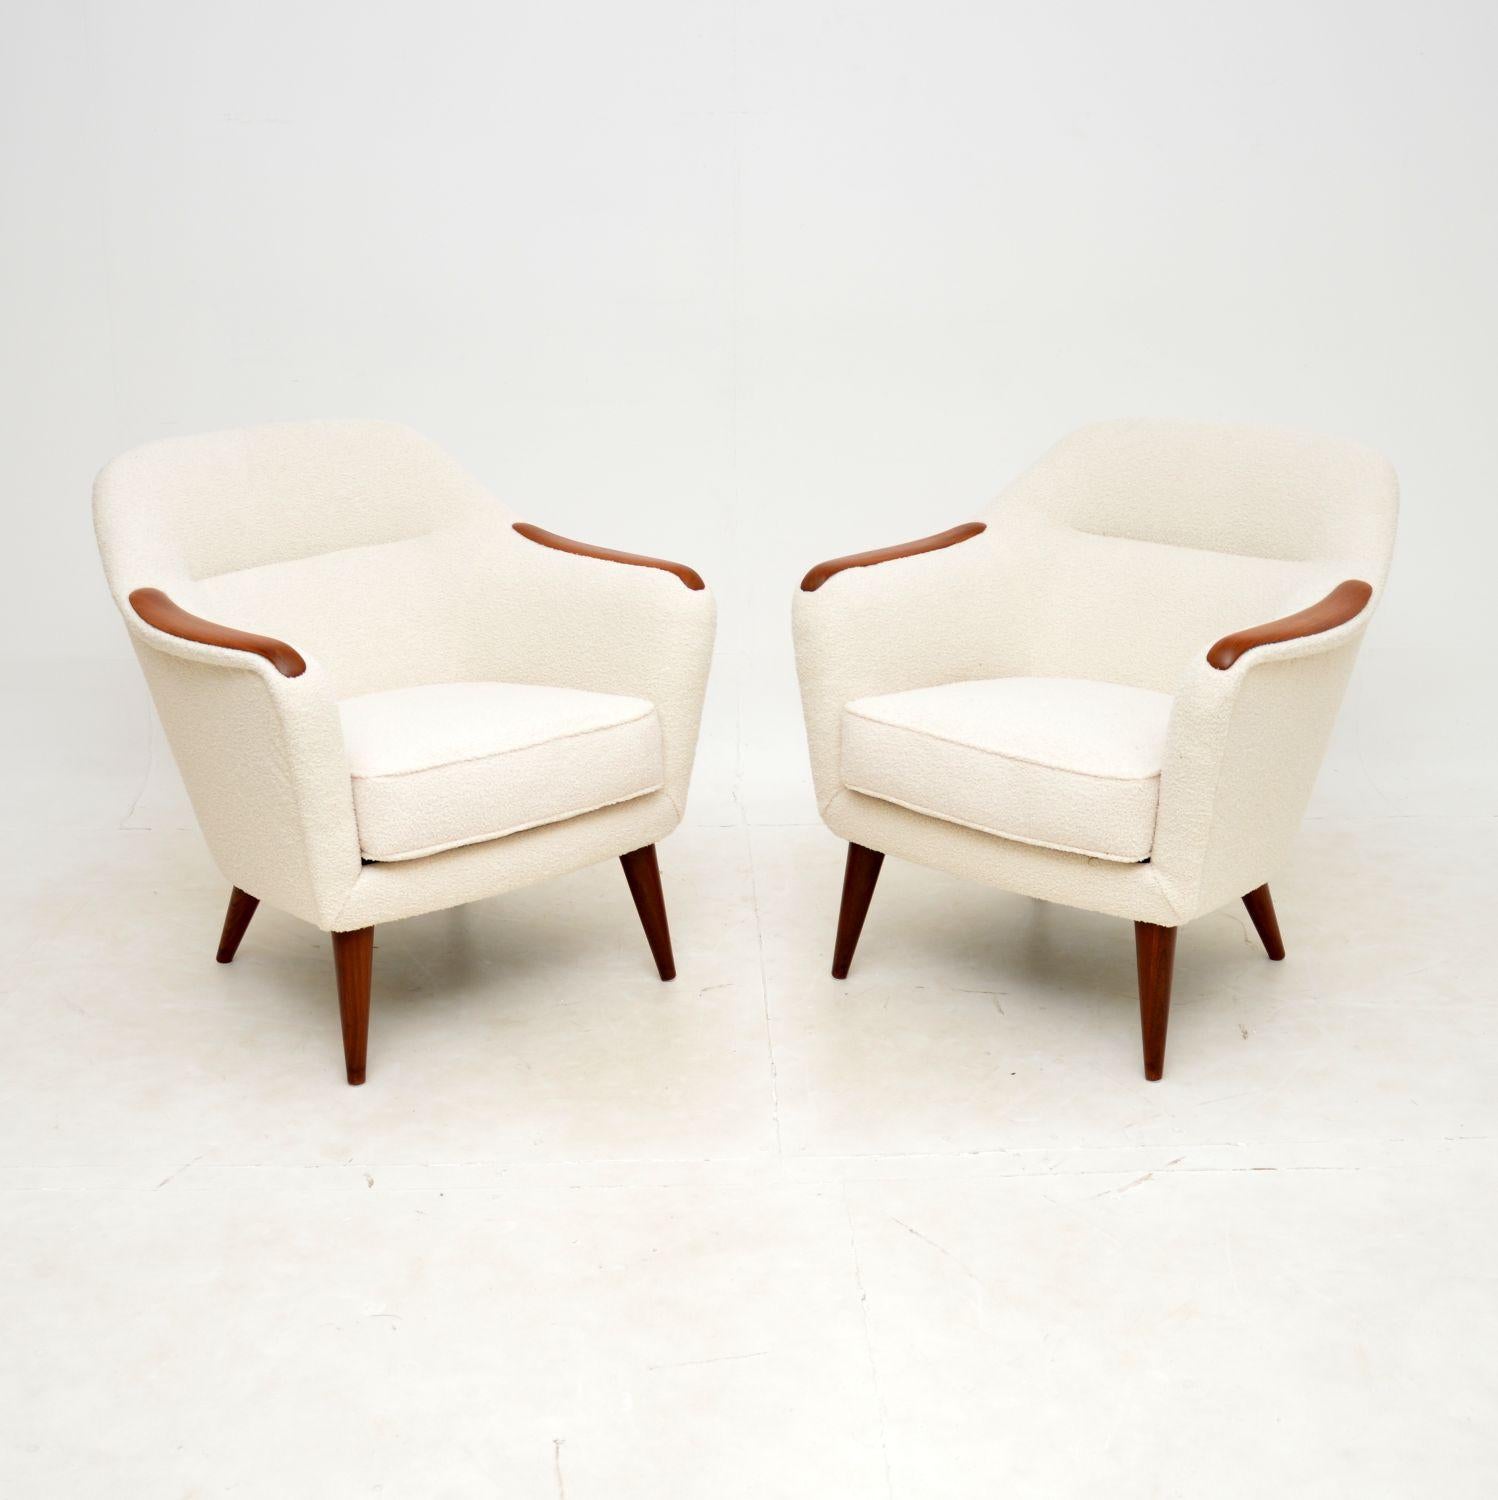 Une paire de fauteuils suédois vintage très élégants, confortables et extrêmement bien faits. Récemment importés de Suède, ils datent des années 1960.

La qualité est exceptionnelle, les accoudoirs en teck sont magnifiques et reposent sur des pieds